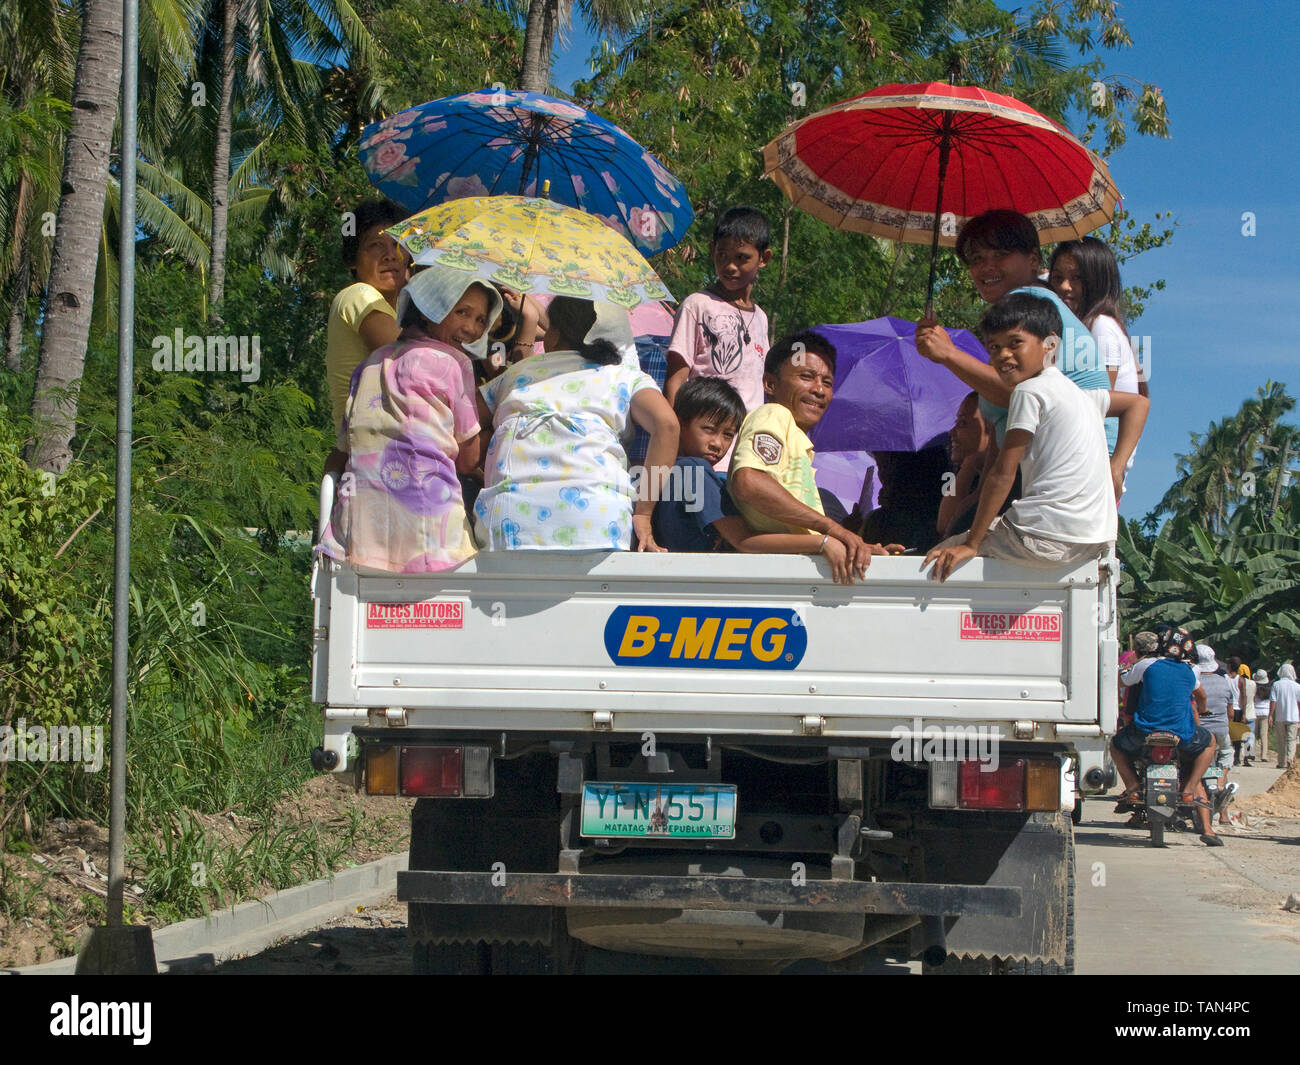 Los lugareños en un camión de transporte público, común en las Filipinas, Moalboal, Cebú, Visayas, Filipinas Foto de stock